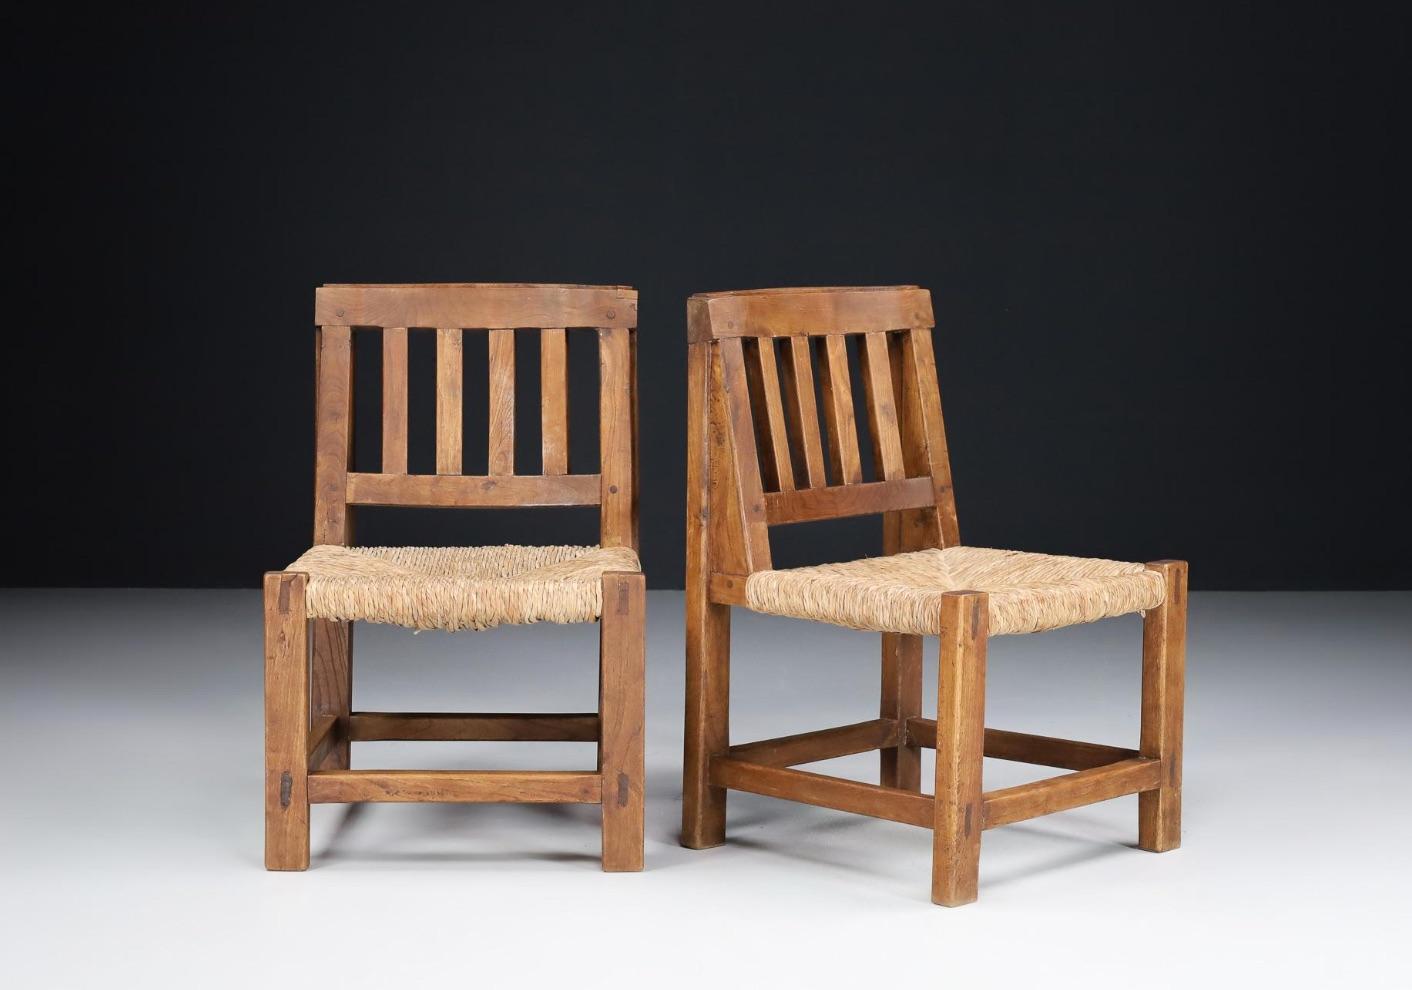 Diese Stühle sind aus einem robusten Kiefernholzrahmen gefertigt und haben eine traditionelle Binsenbestuhlung.  Der Stil ist sowohl rustikal/primitiv als auch anspruchsvoll. 